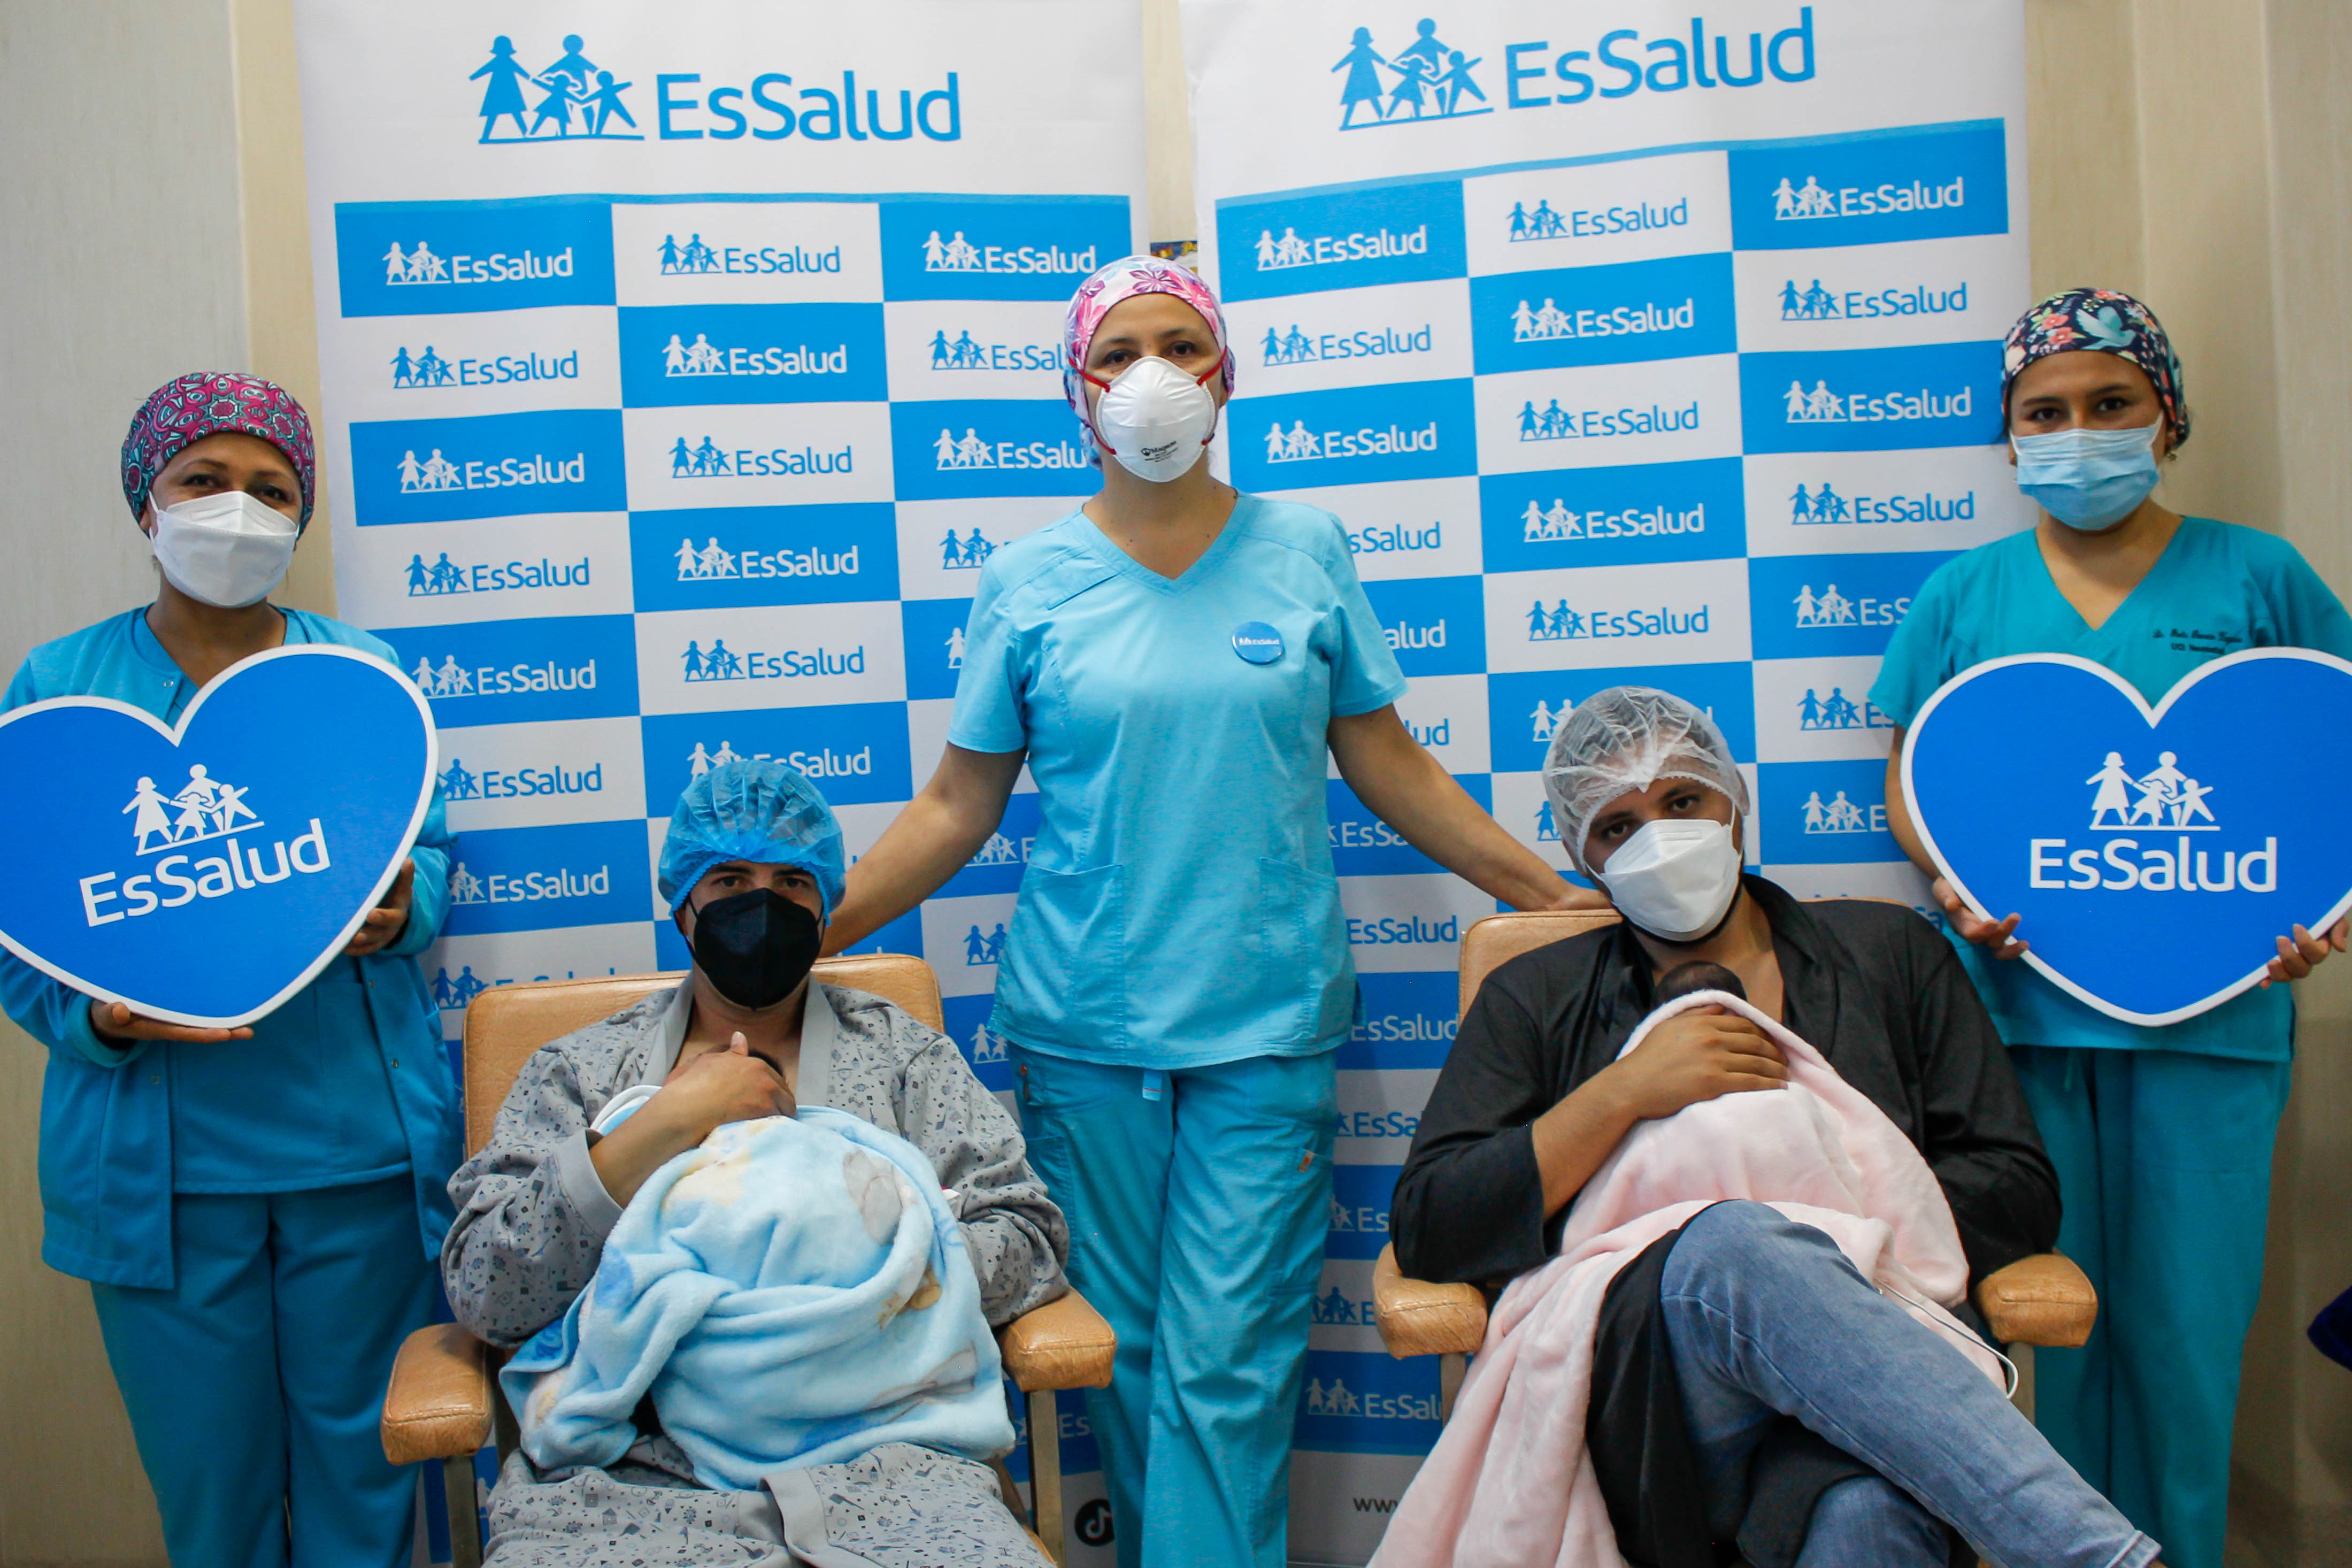 Essalud - EsSalud: Padres primerizos celebrarán su día brindando calor a sus bebés prematuros con la técnica “Papá canguro”